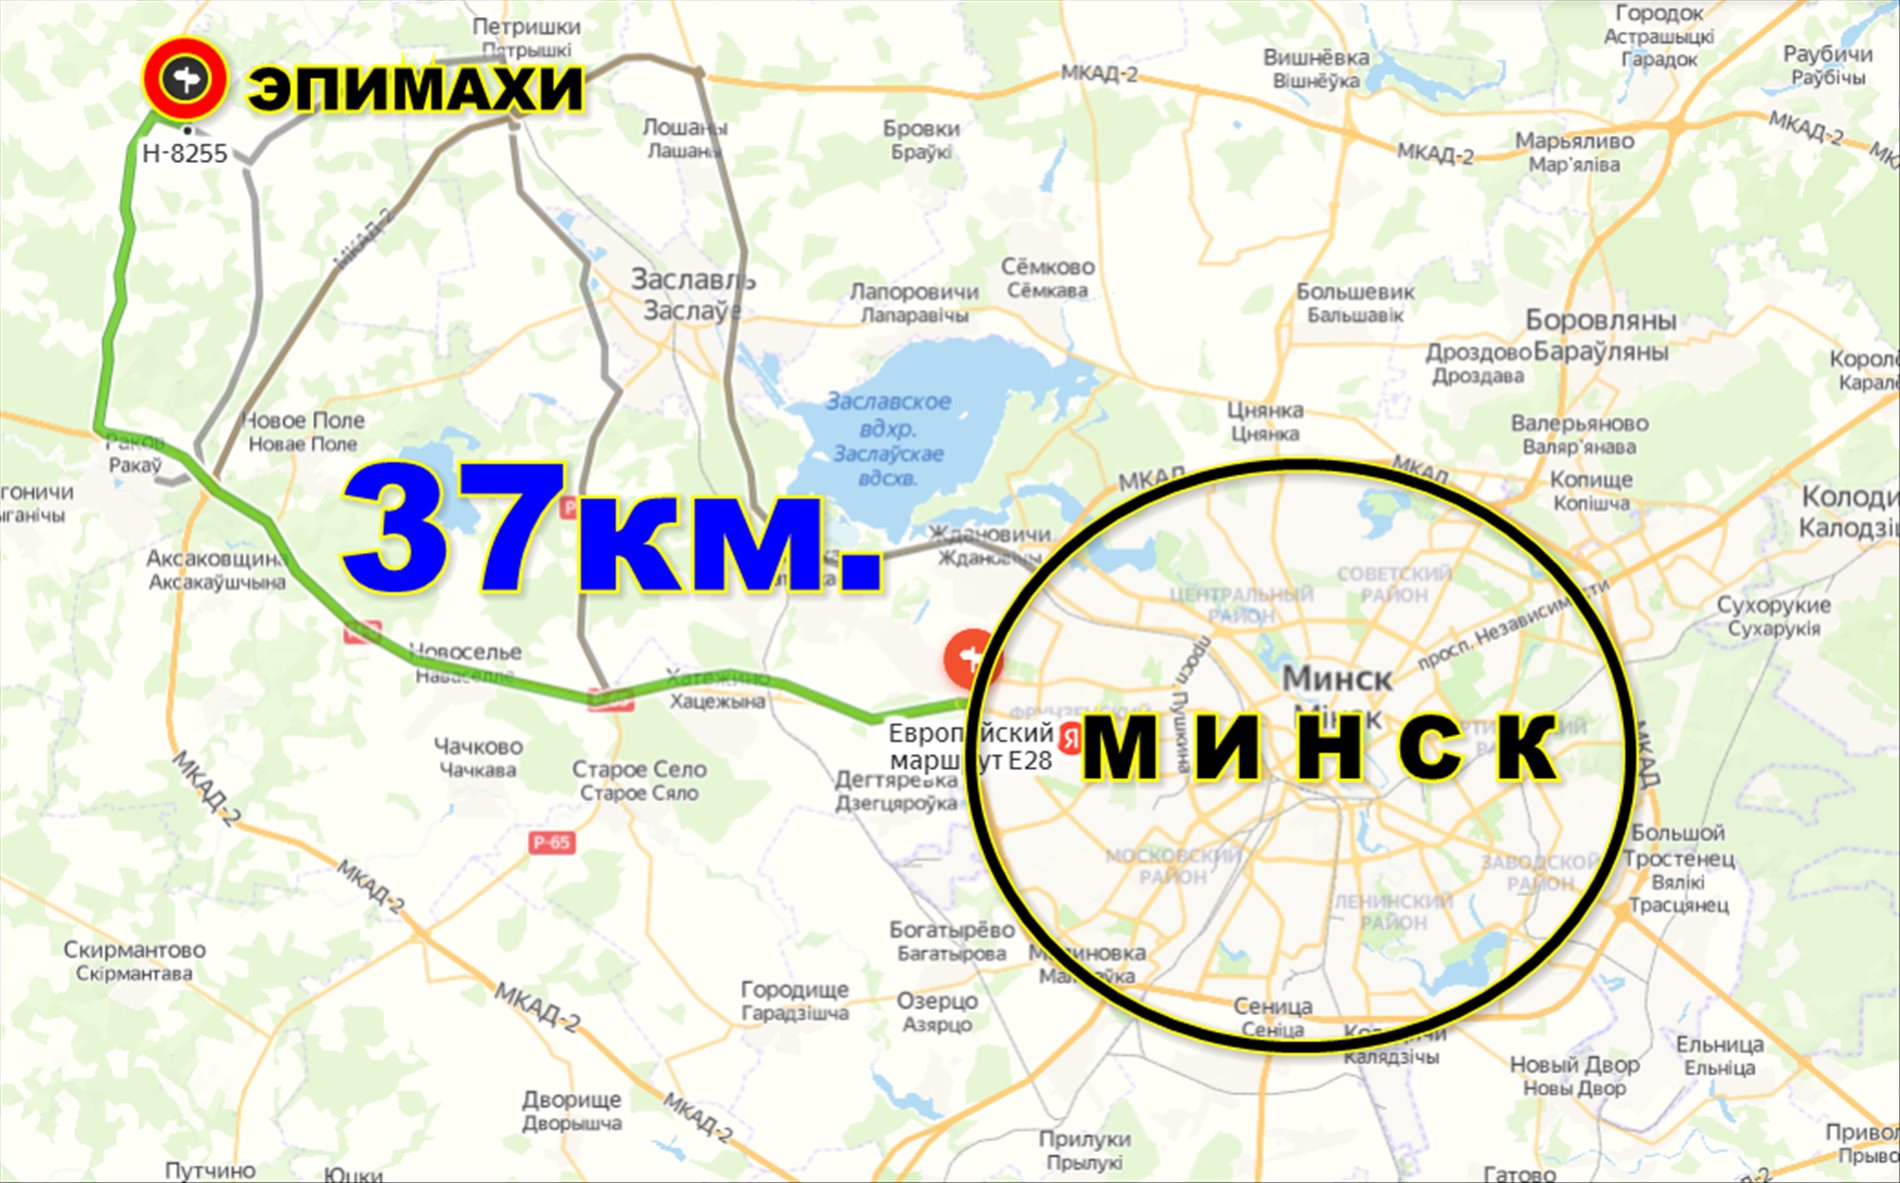 Продам дом в д. Эпимахи, 37 км от Минска. Воложинский р-н. - фотография